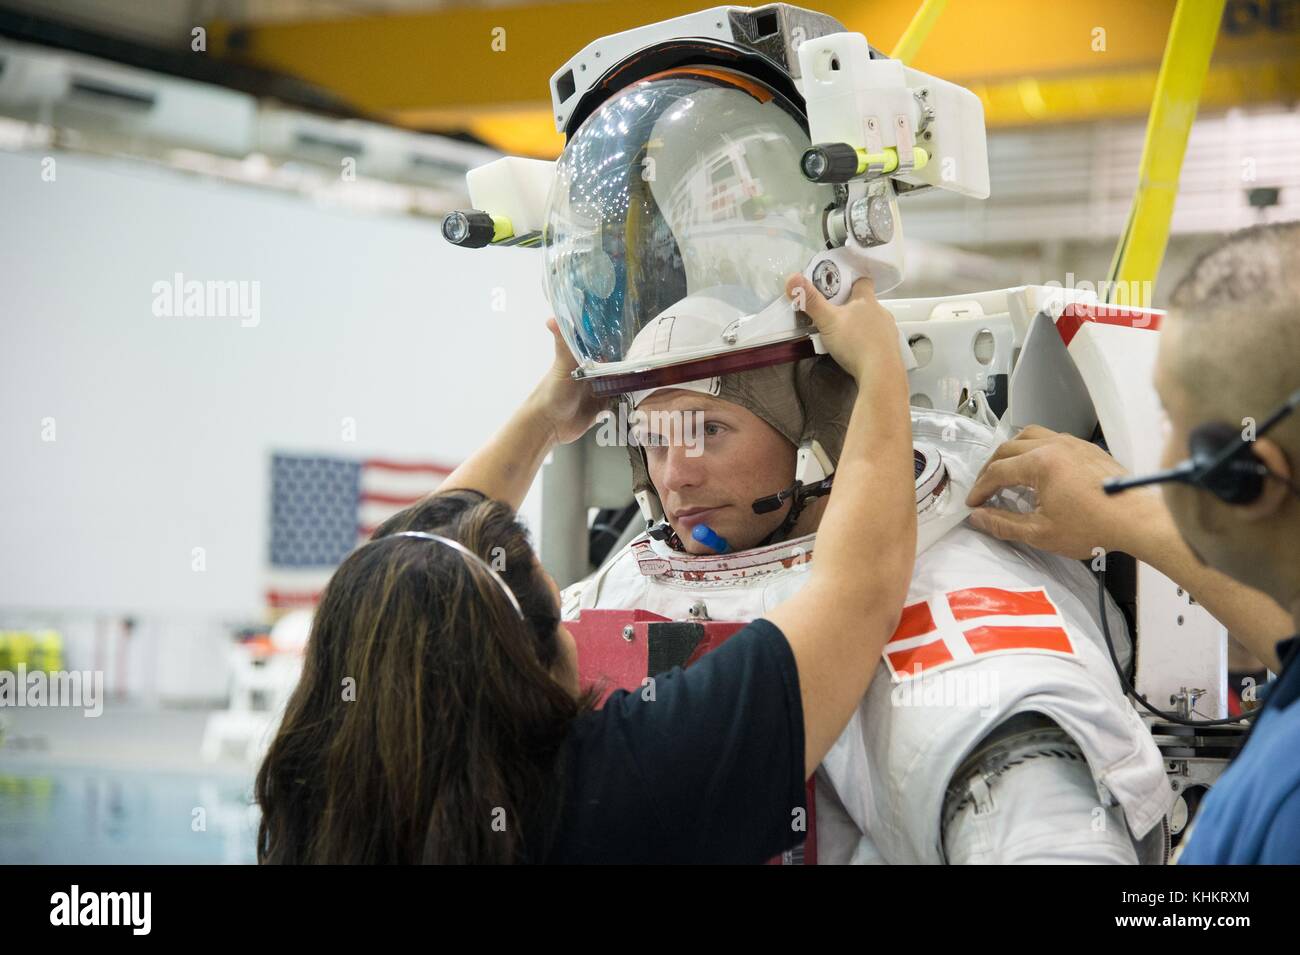 Esa-astronaut Andreas Mogensen bereitet die Neutral Buoyancy Laboratory Unterwasser spacewalk Training am Johnson Space Center April 1, 2013 in Houston, Texas. Stockfoto